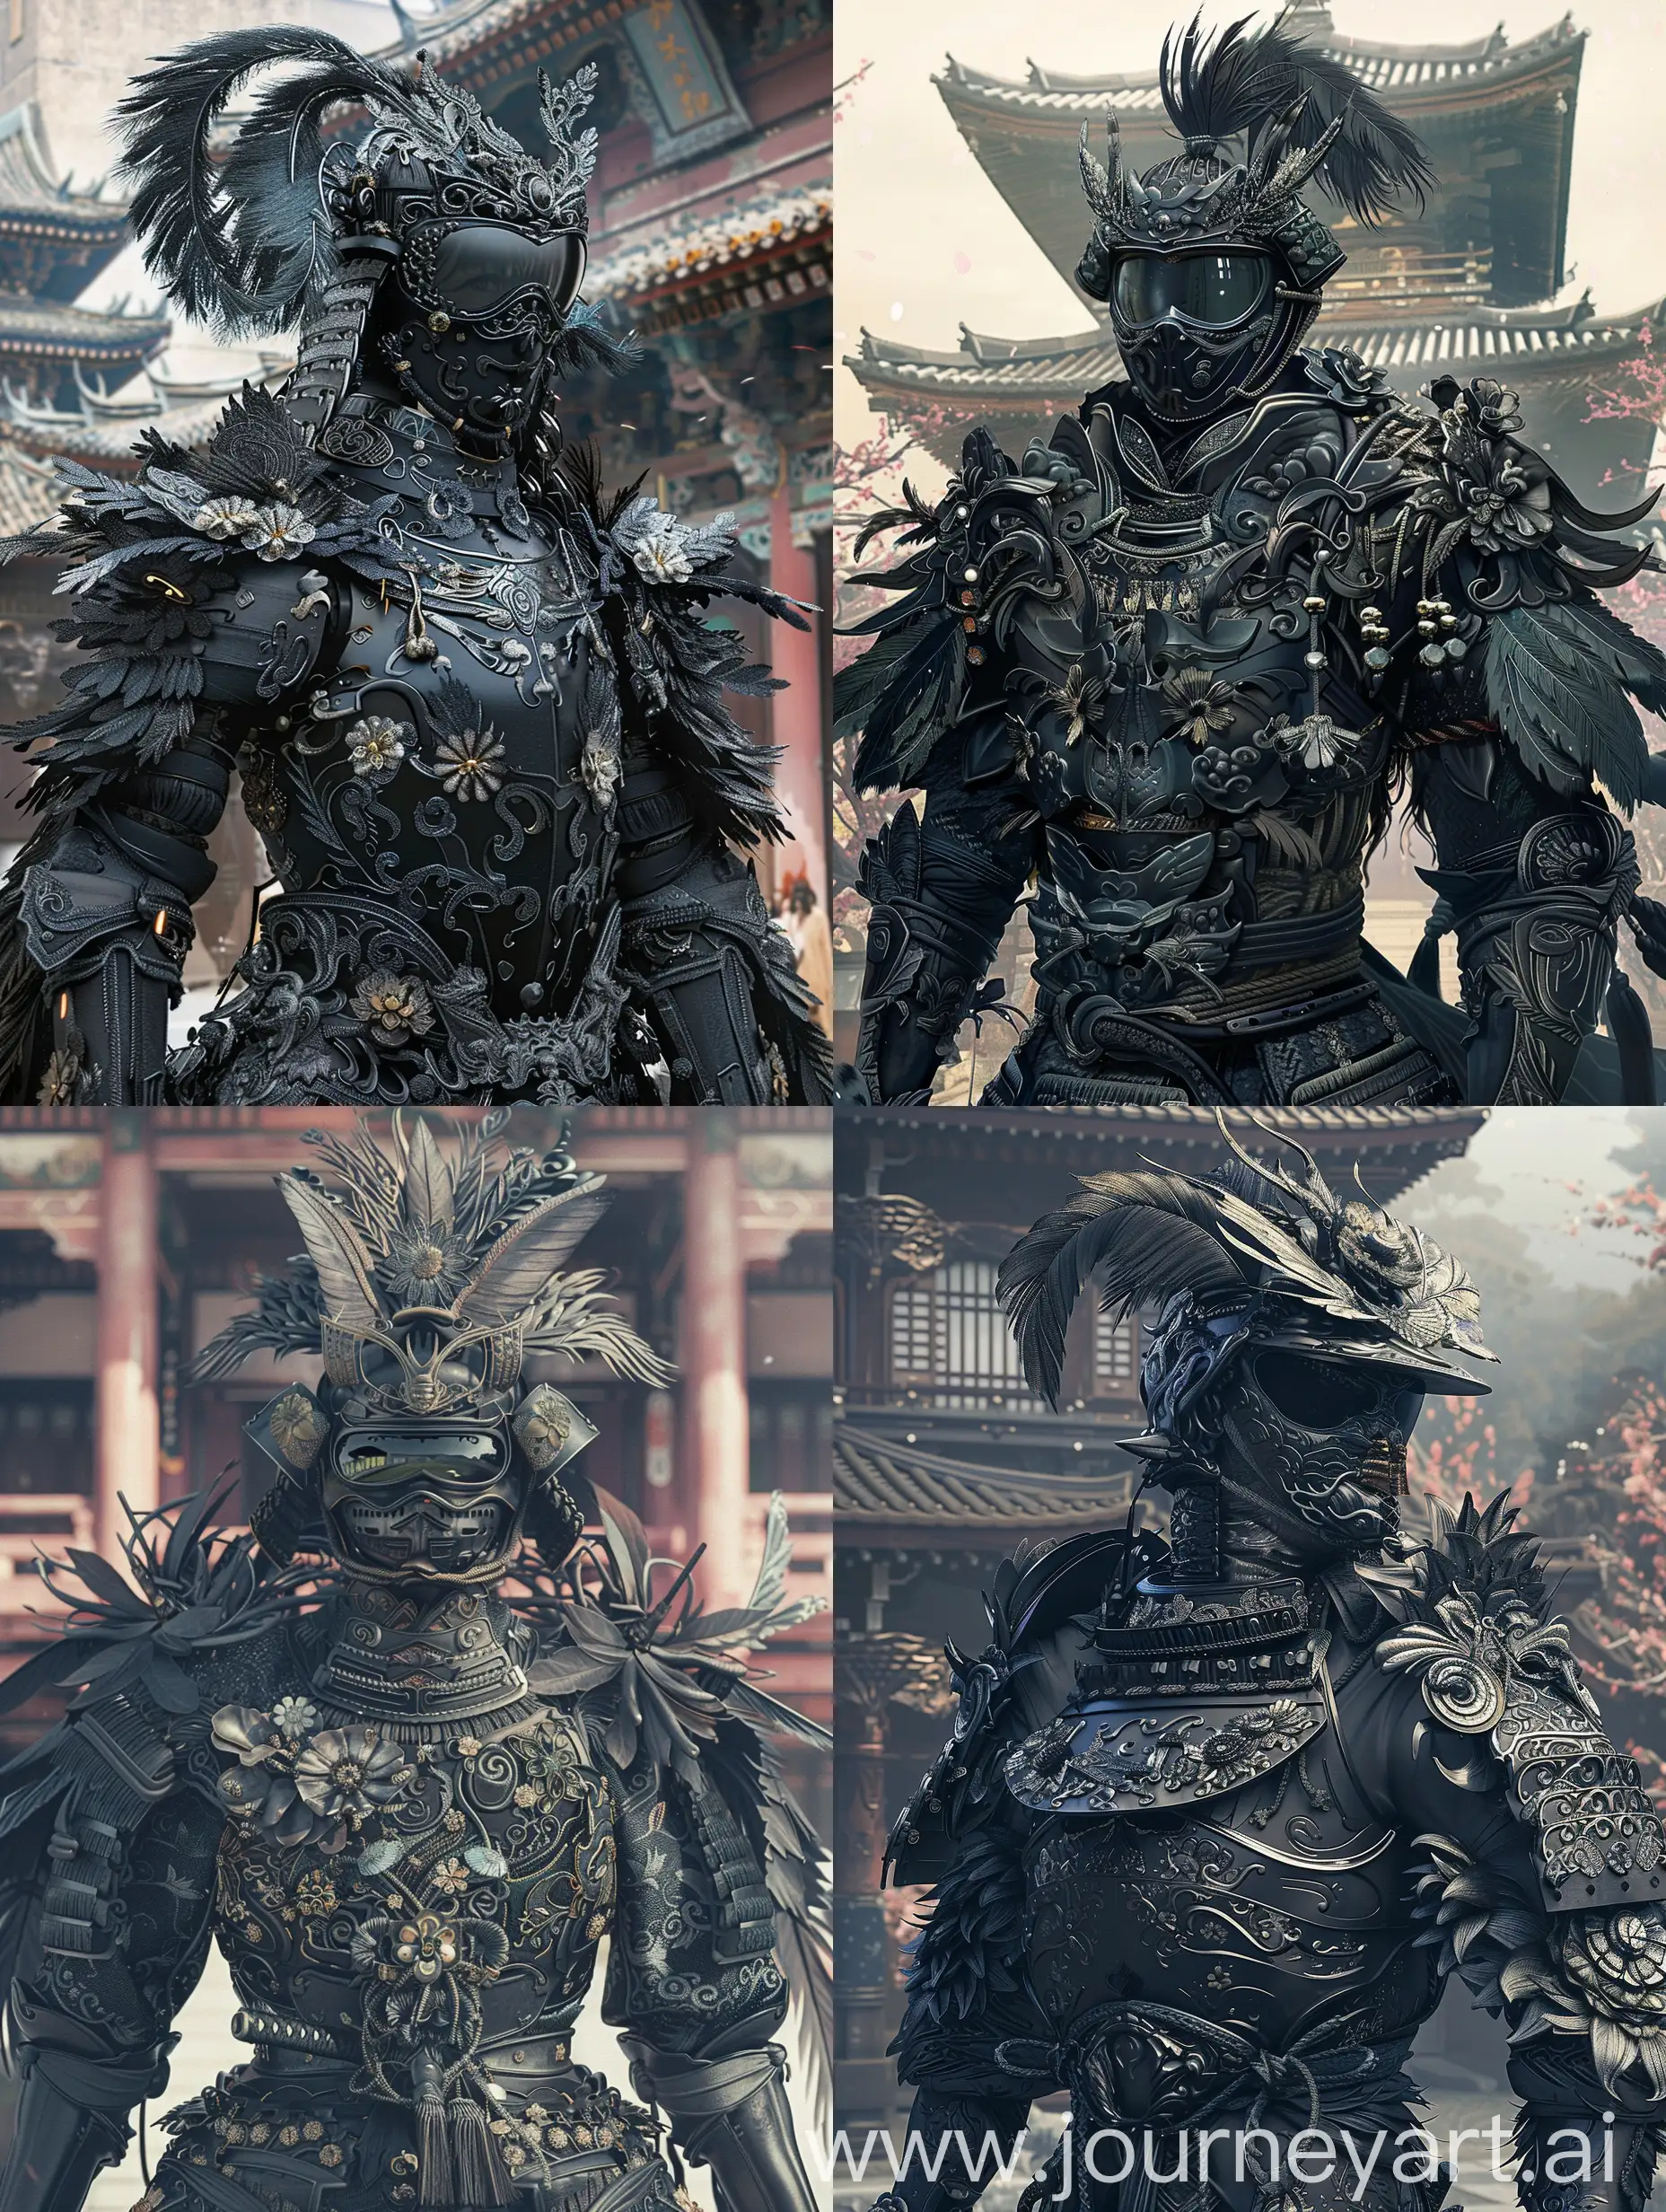 Ornate-Samurai-Warrior-in-Elaborate-Black-Armor-at-Samurai-Temple